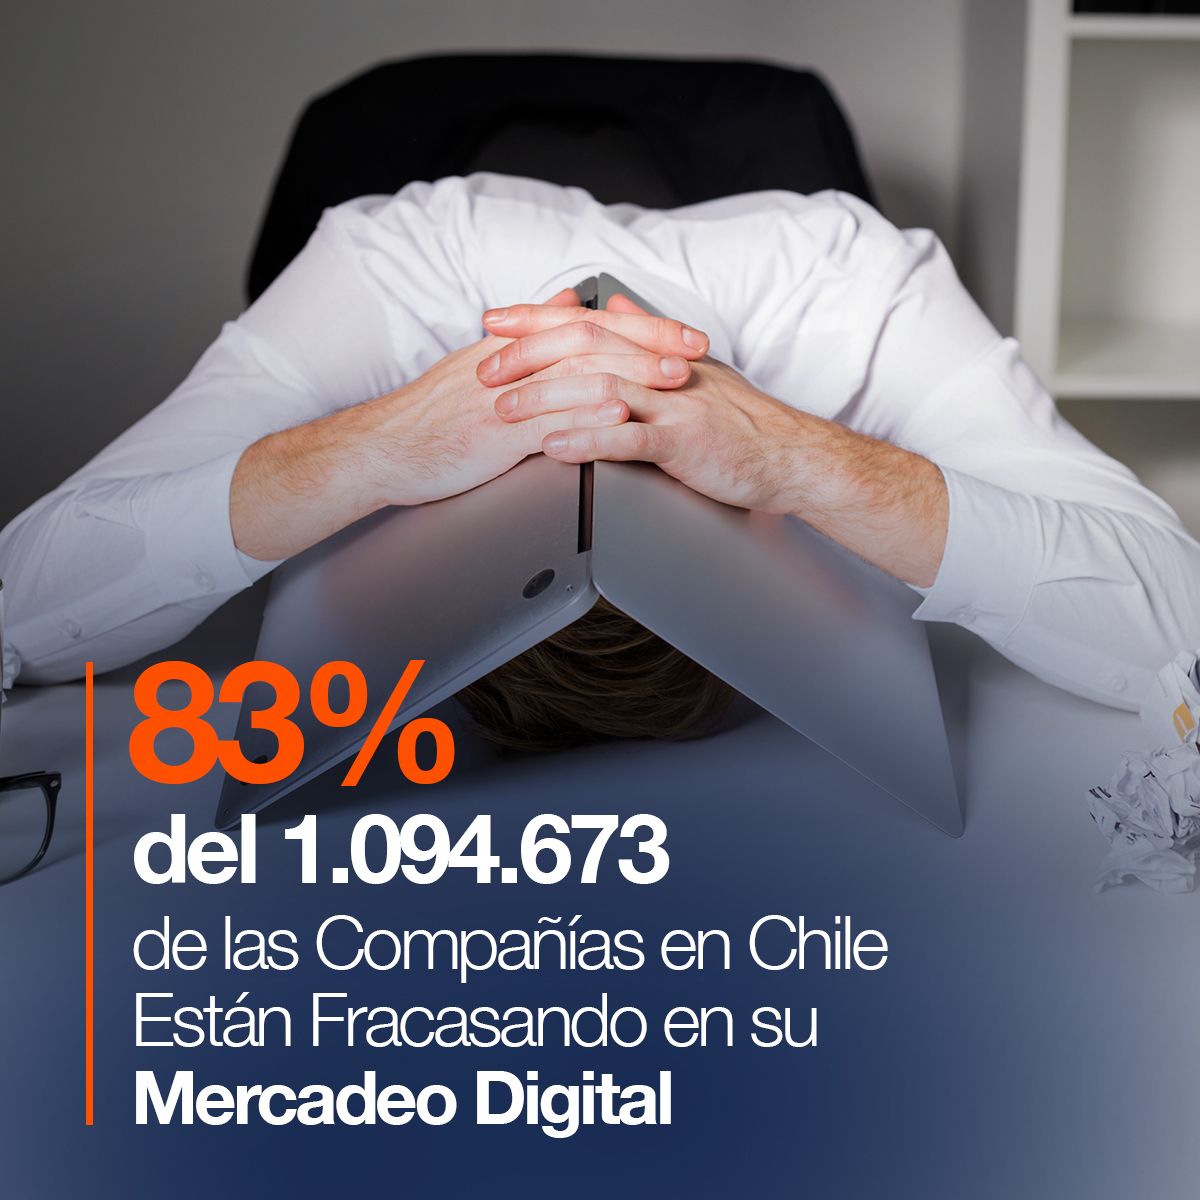 83% del 1.094.673 de las Compañías en Chile Están Fracasando en su Mercadeo Digital